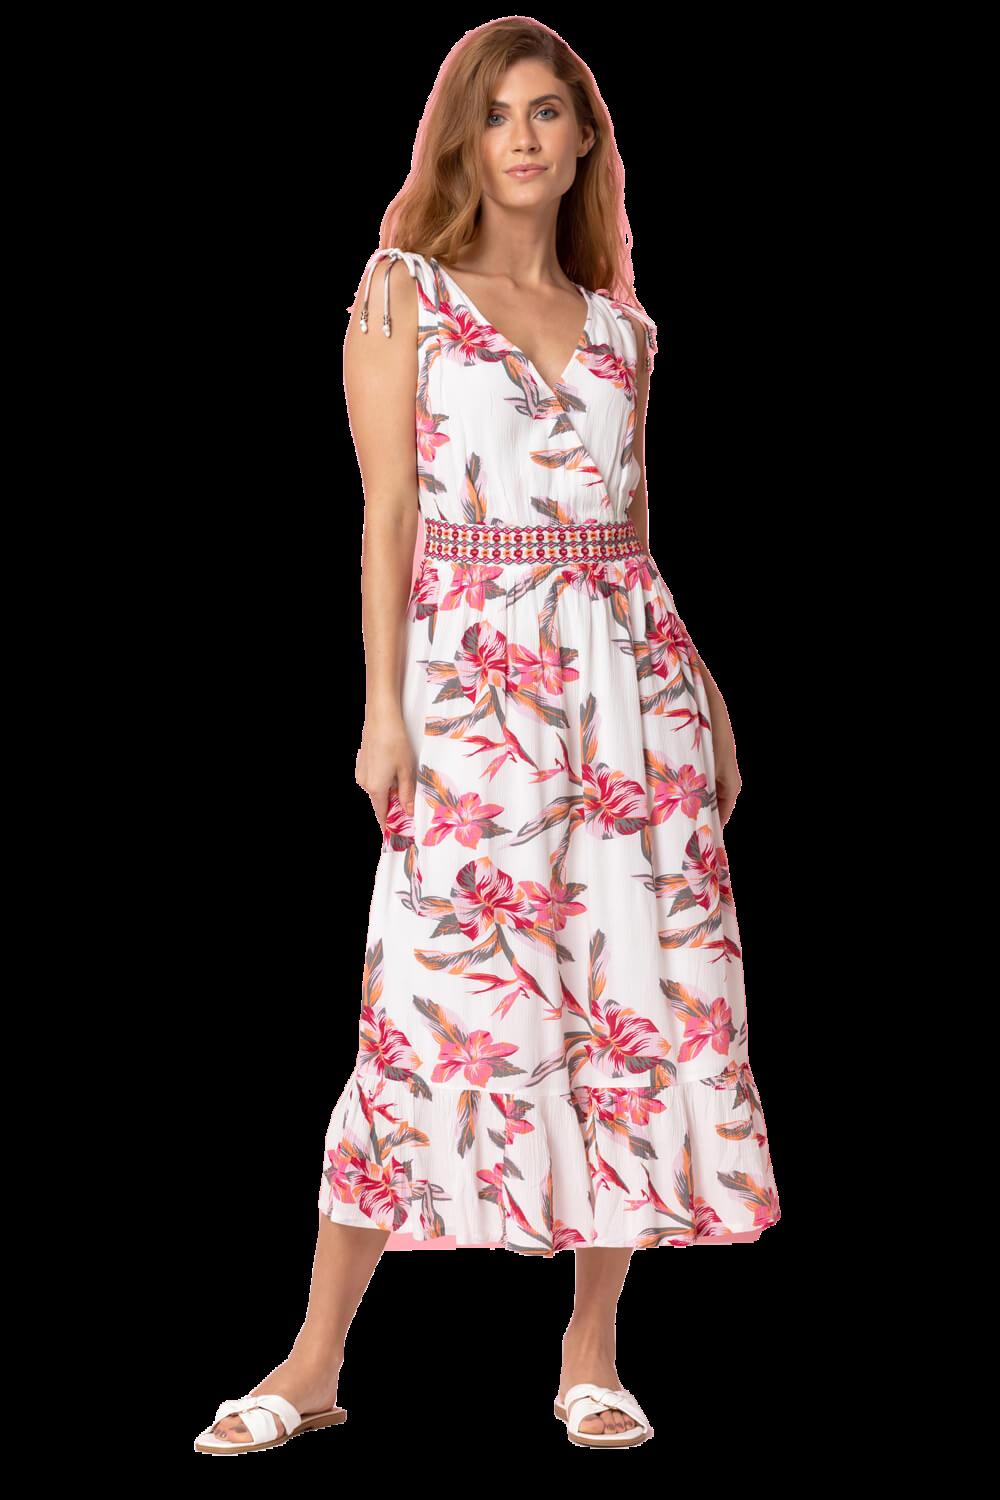 Платье с цветочной вышивкой Roman, белый женское свадебное платье с кружевной аппликацией белое простое атласное платье в стиле бохо с v образным вырезом лето 2021